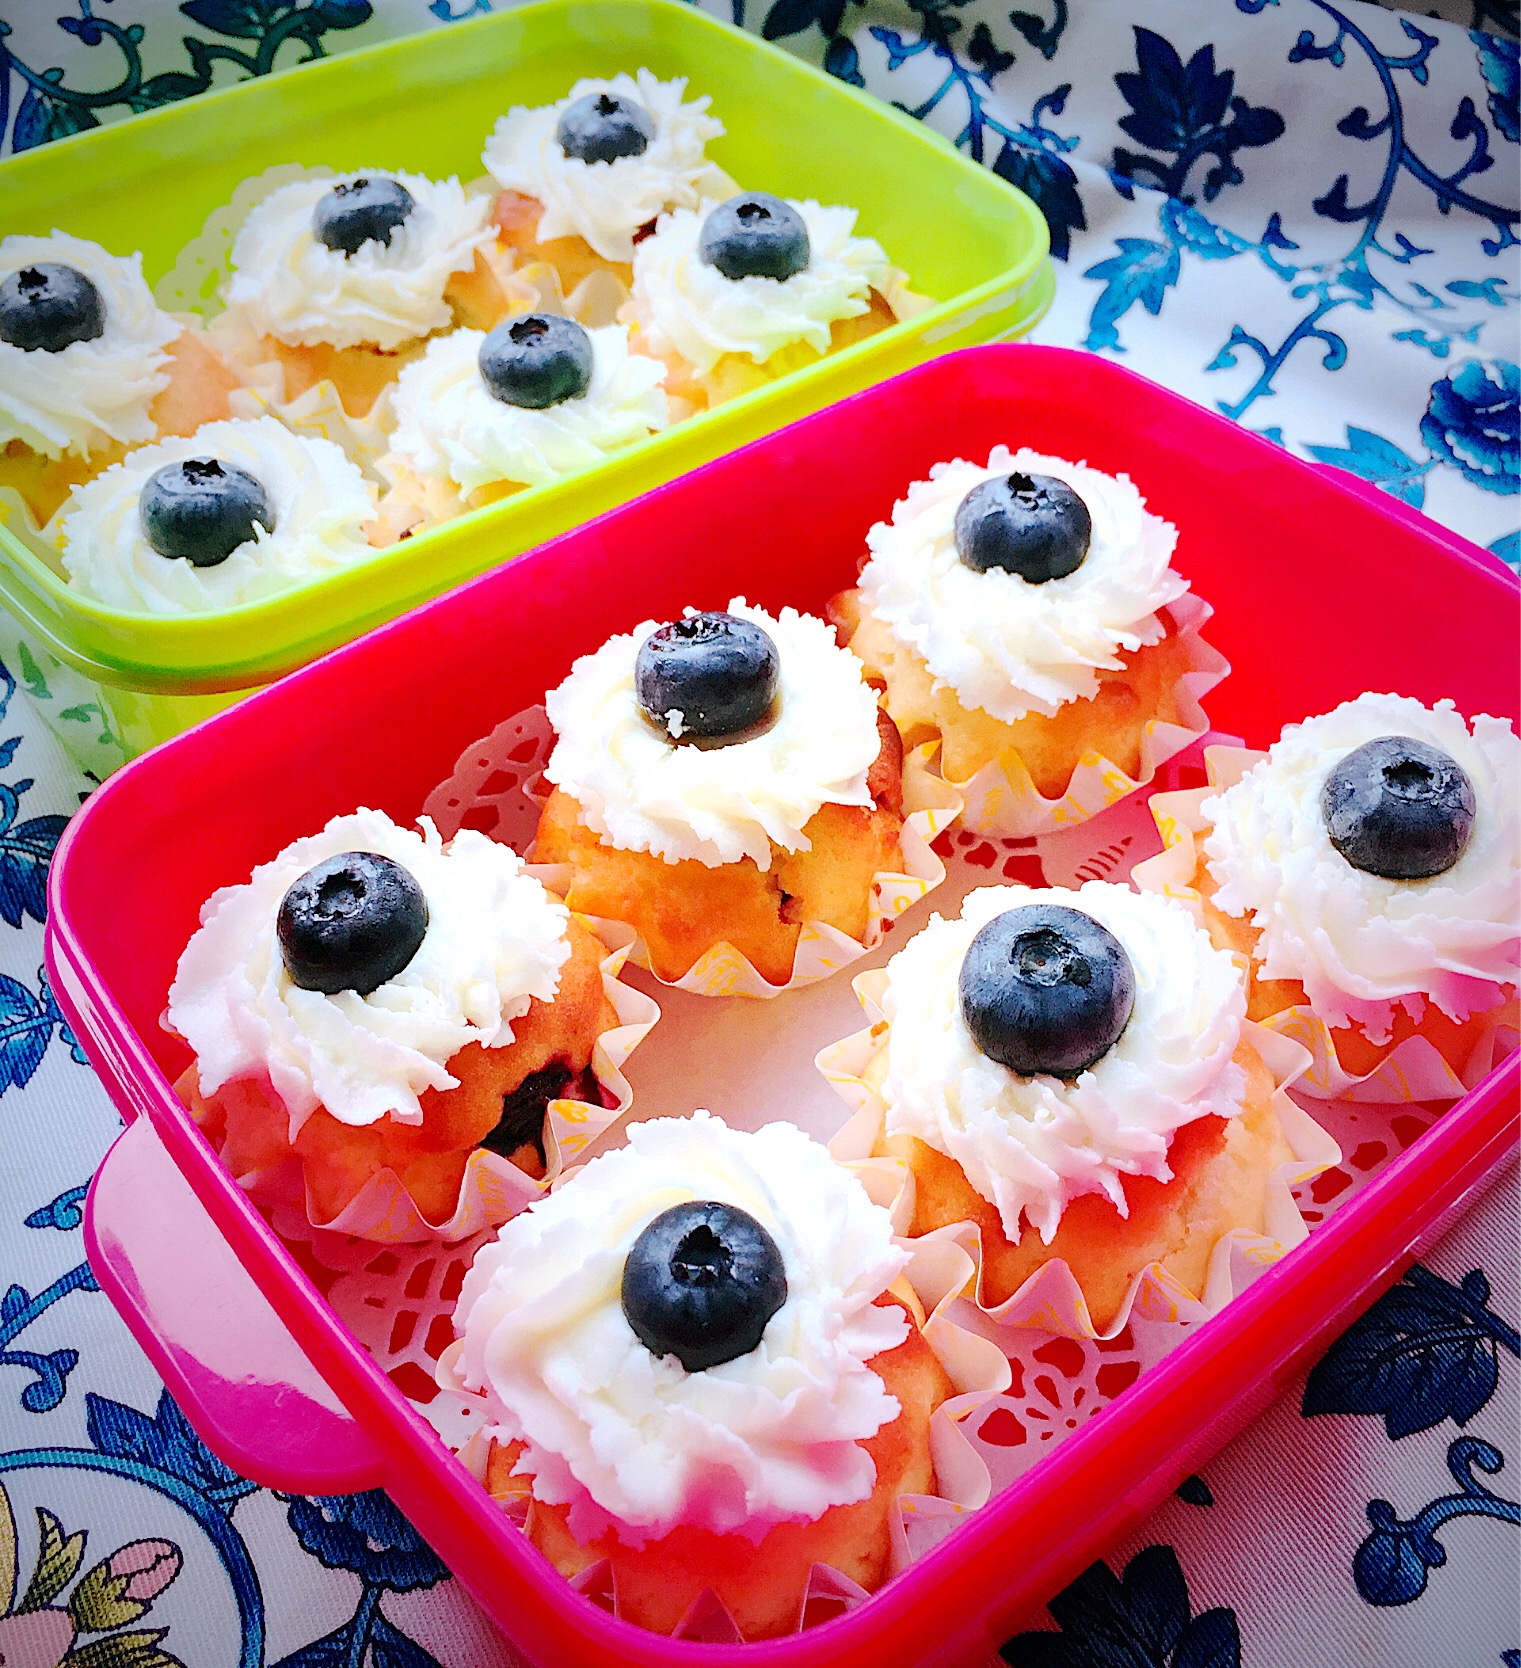 #庭で採れたシリーズ  #ブルーベリー  #blueberrymuffin  #homemade #手作り  #ルバーブ 
#muffin  #太白胡麻油  #あっさり甘さ控え目 #カップケーキ  #差し入れのお菓子 
 #クリームチーズフロスティング  #snapdish #blueberry #焼き菓子